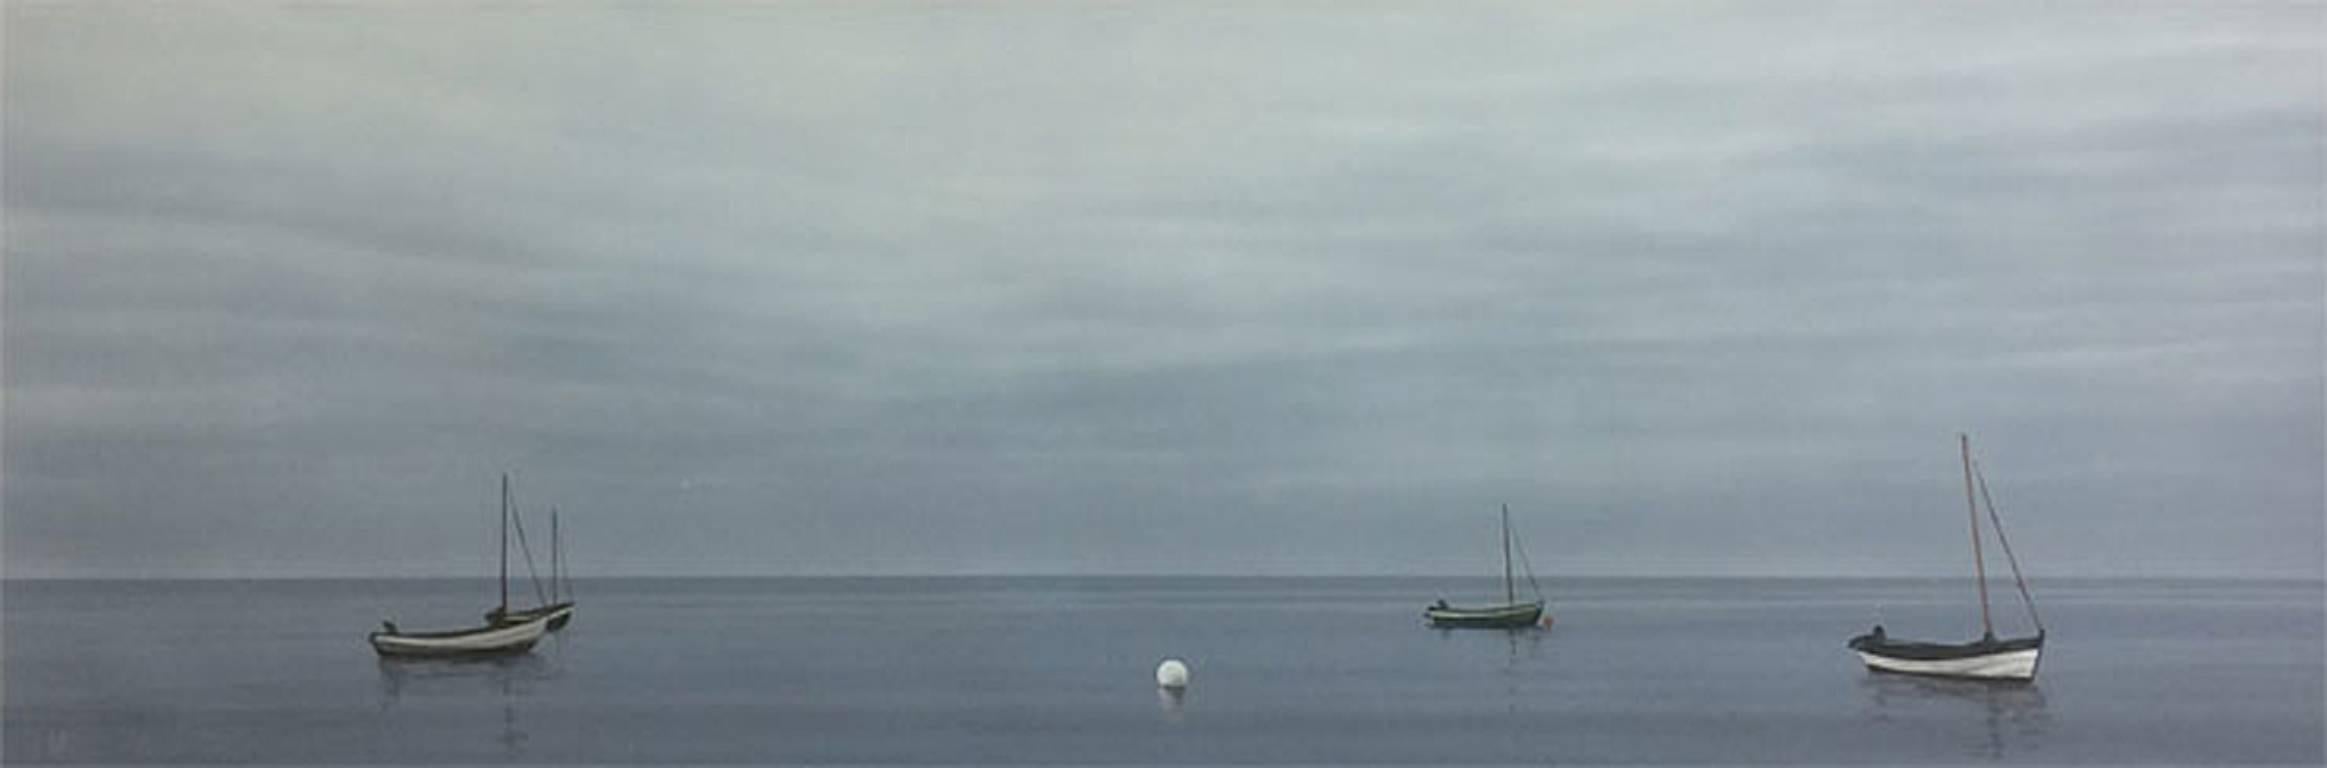 Dawn with Boats gris - peinture contemporaine de paysage de plage de bord de mer - Painting de Terry Watts